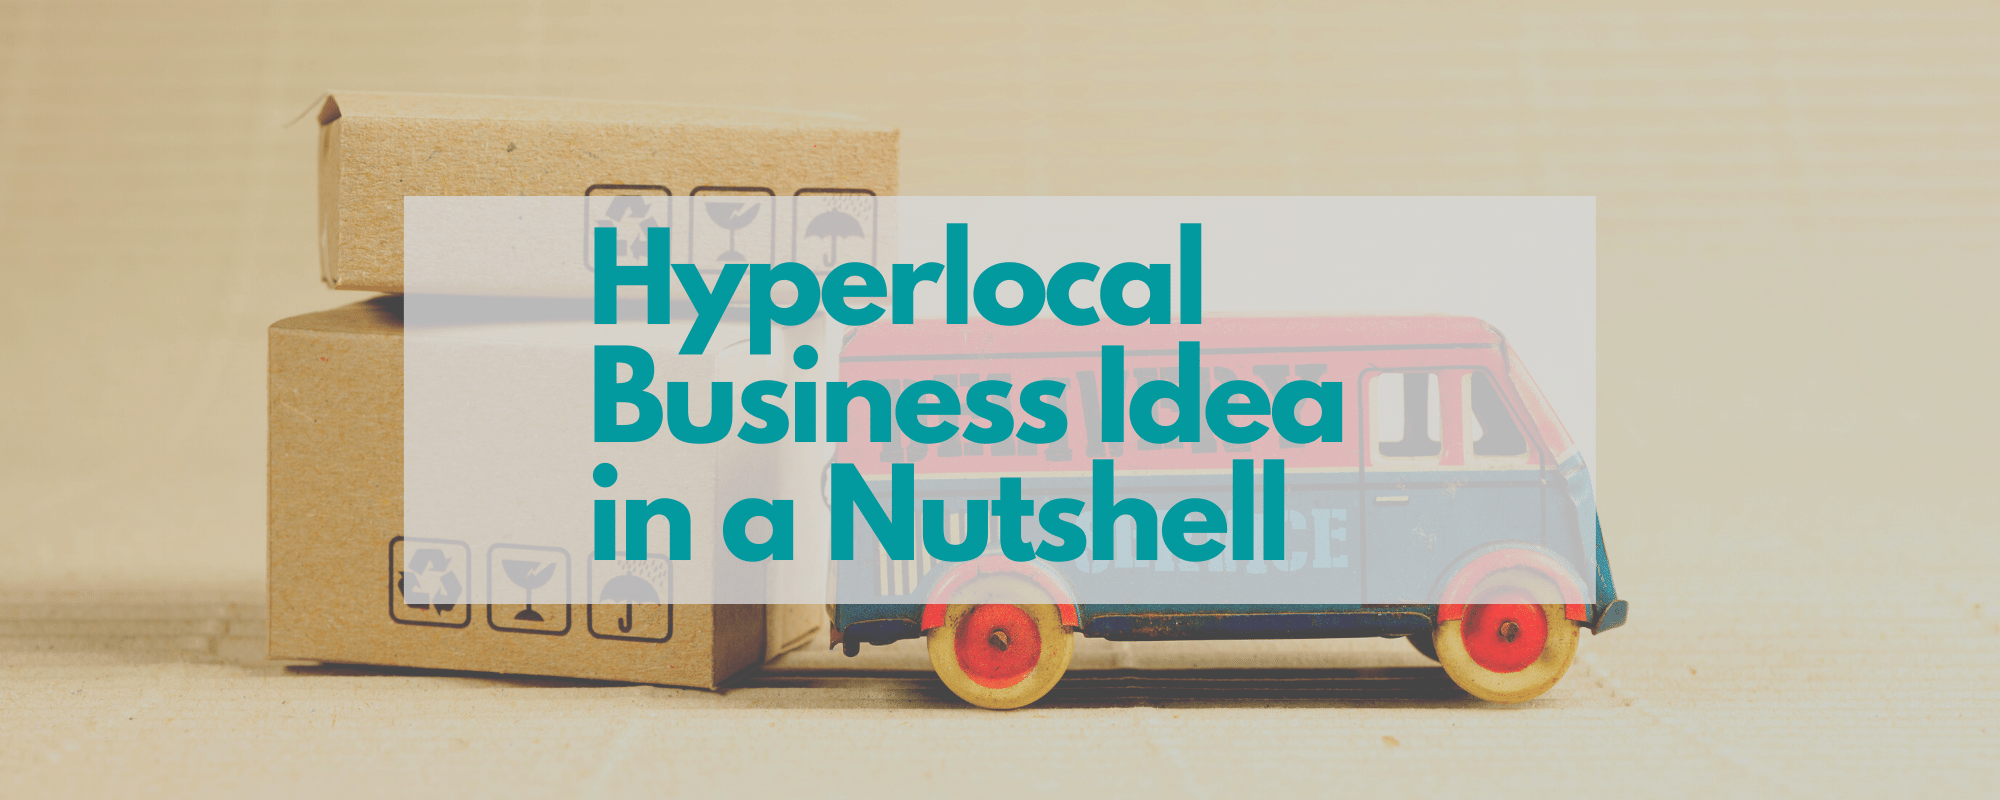 hyperlocal business idea